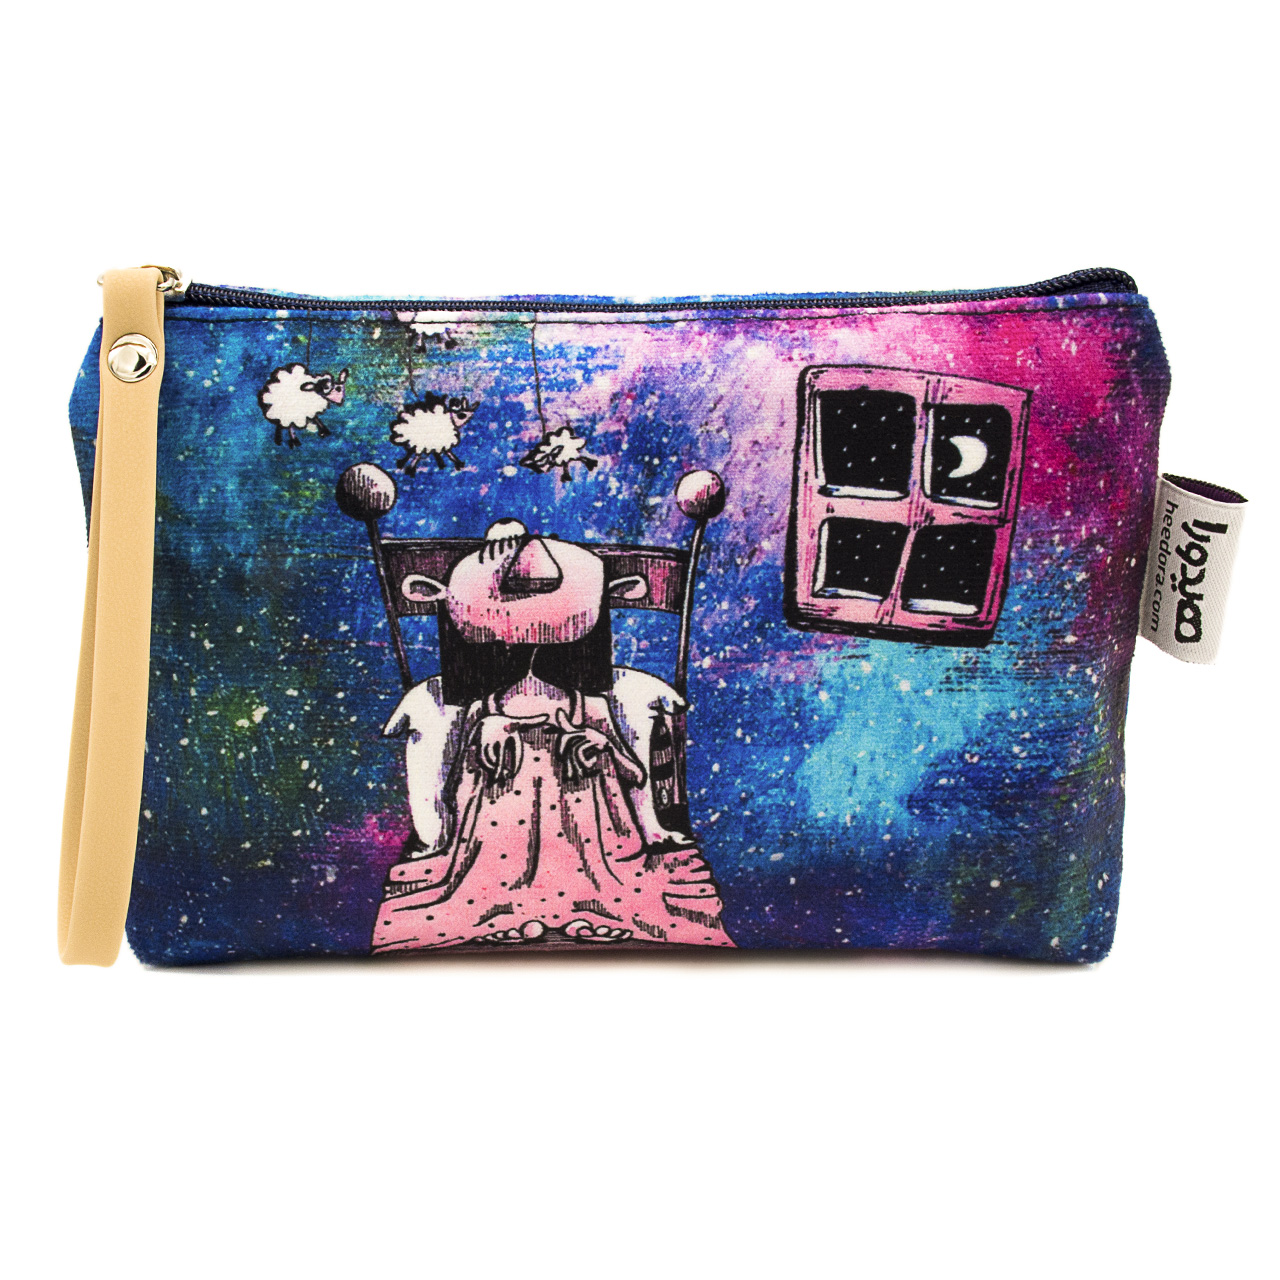 کیف لوازم آرایش هیدورا مدل رویا در کهکشان